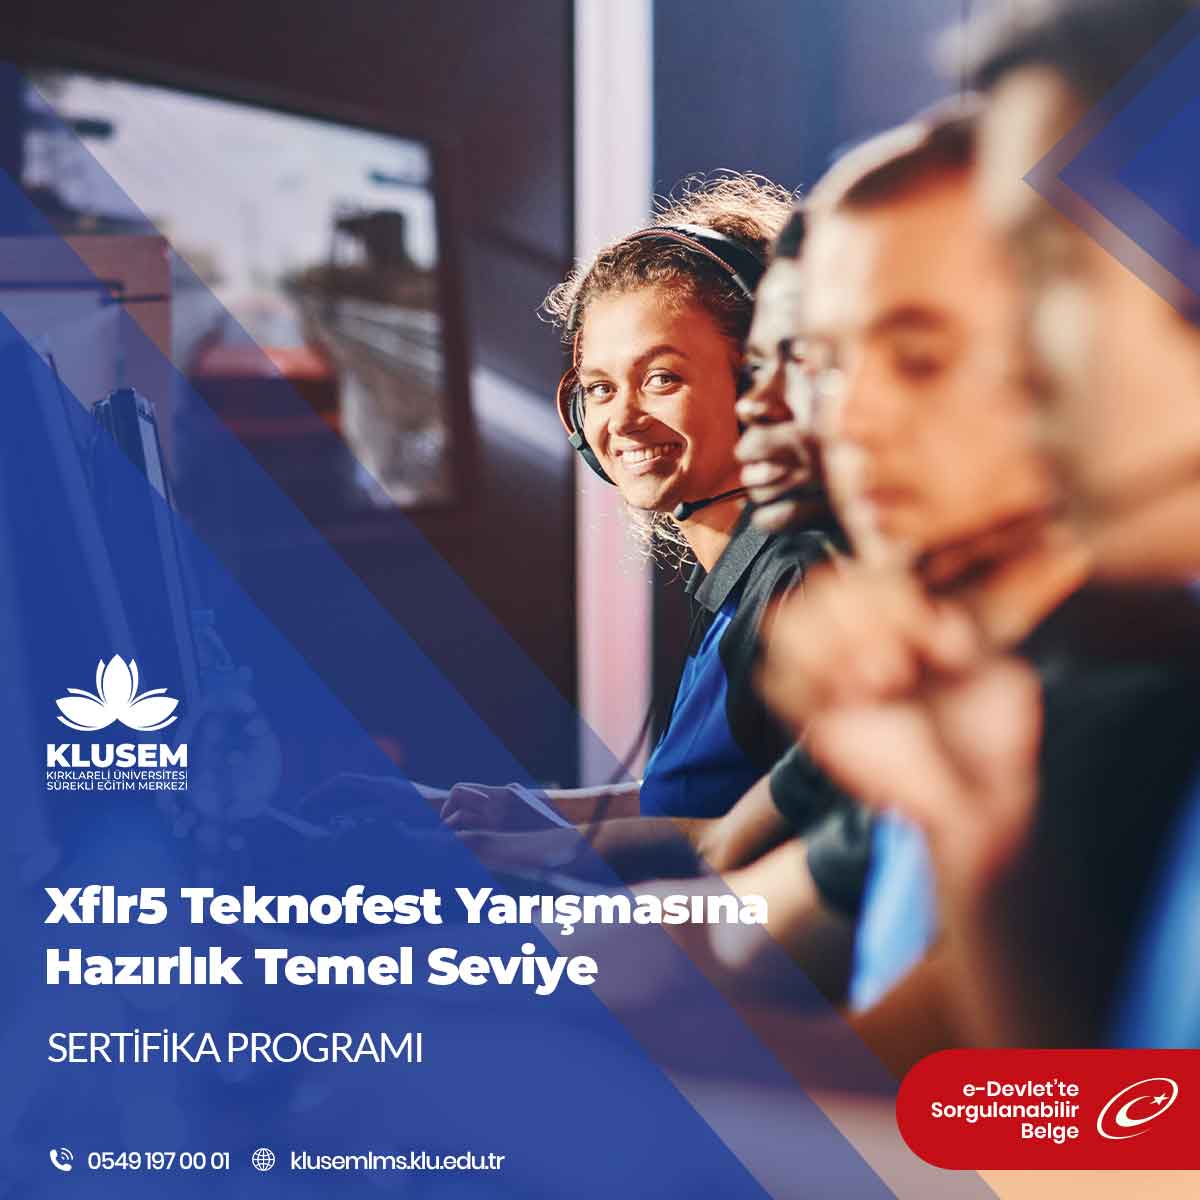 Xflr5 Teknofest Yarışmasına Hazırlık Temel Seviye Eğitimi Sertifika Programı